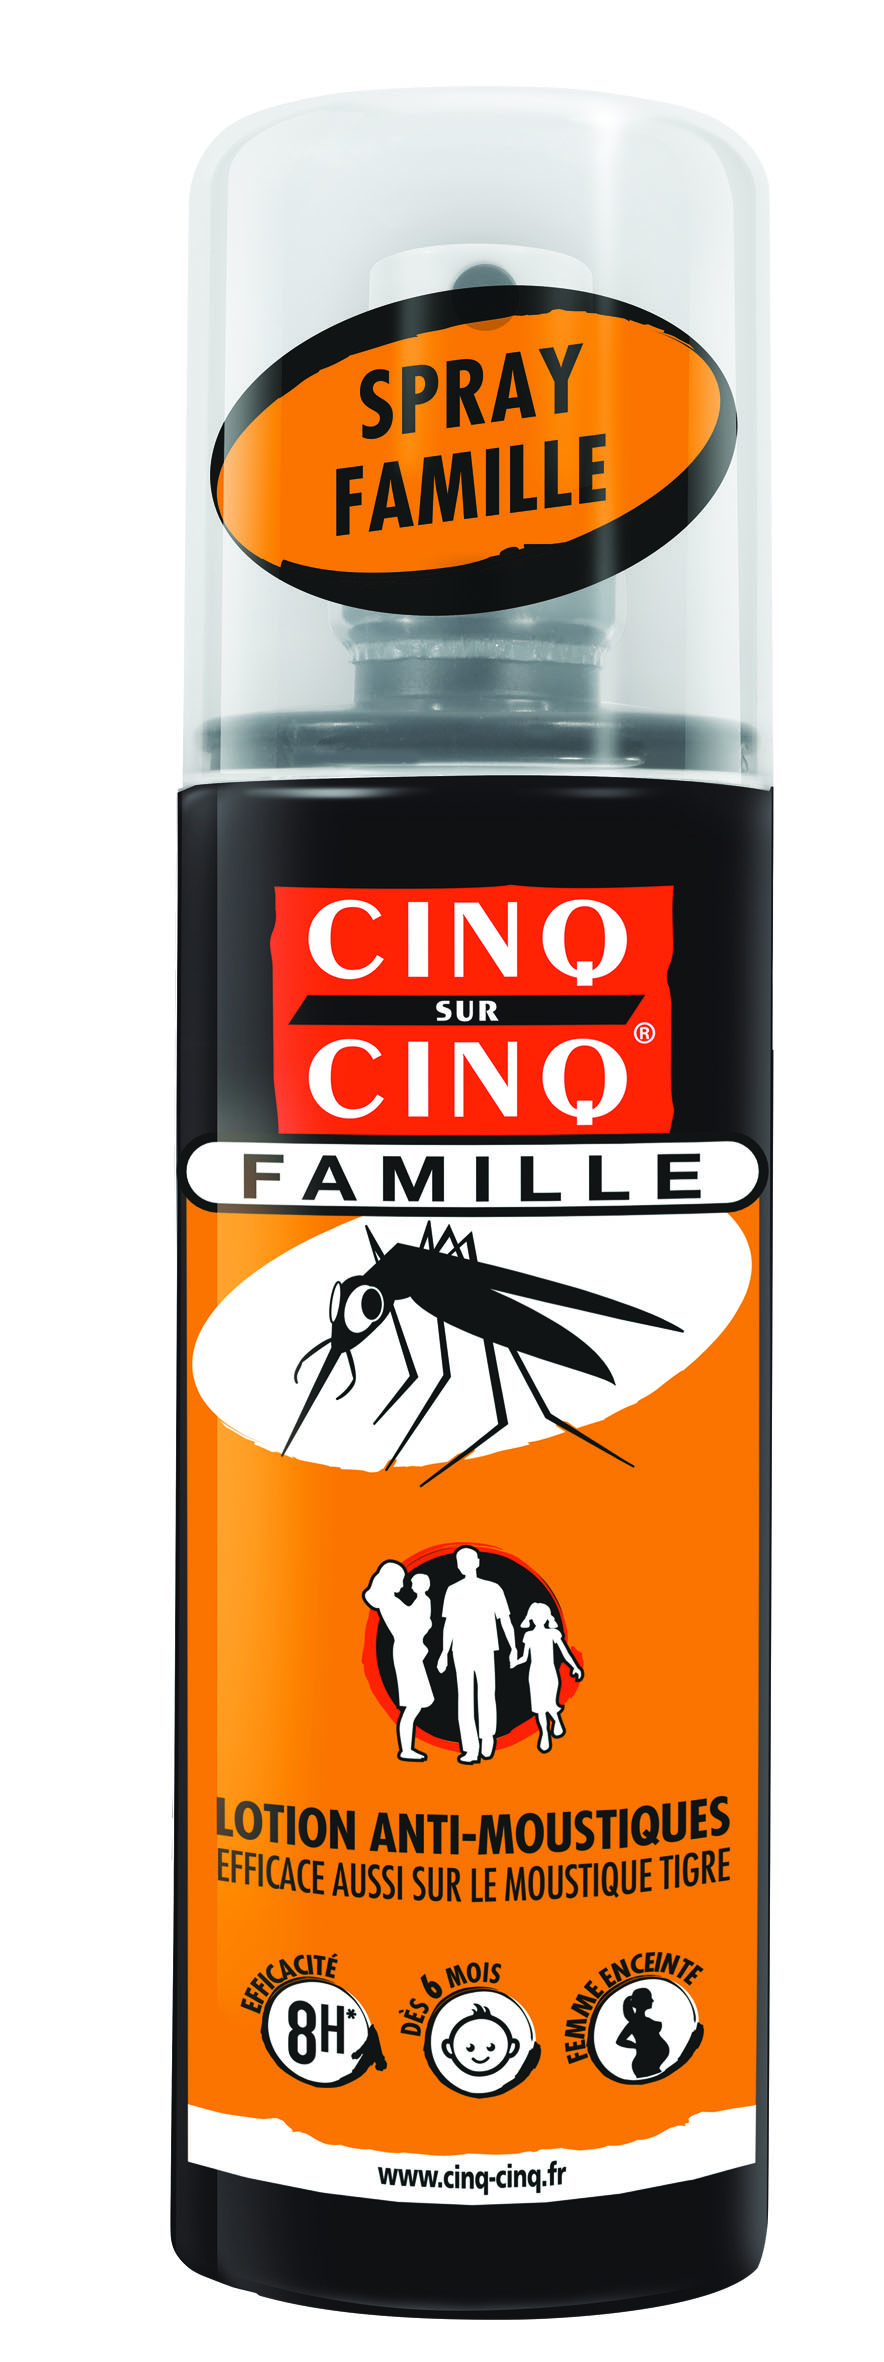 Cinq Sur Cinq Famille Lotion Anti-moustique